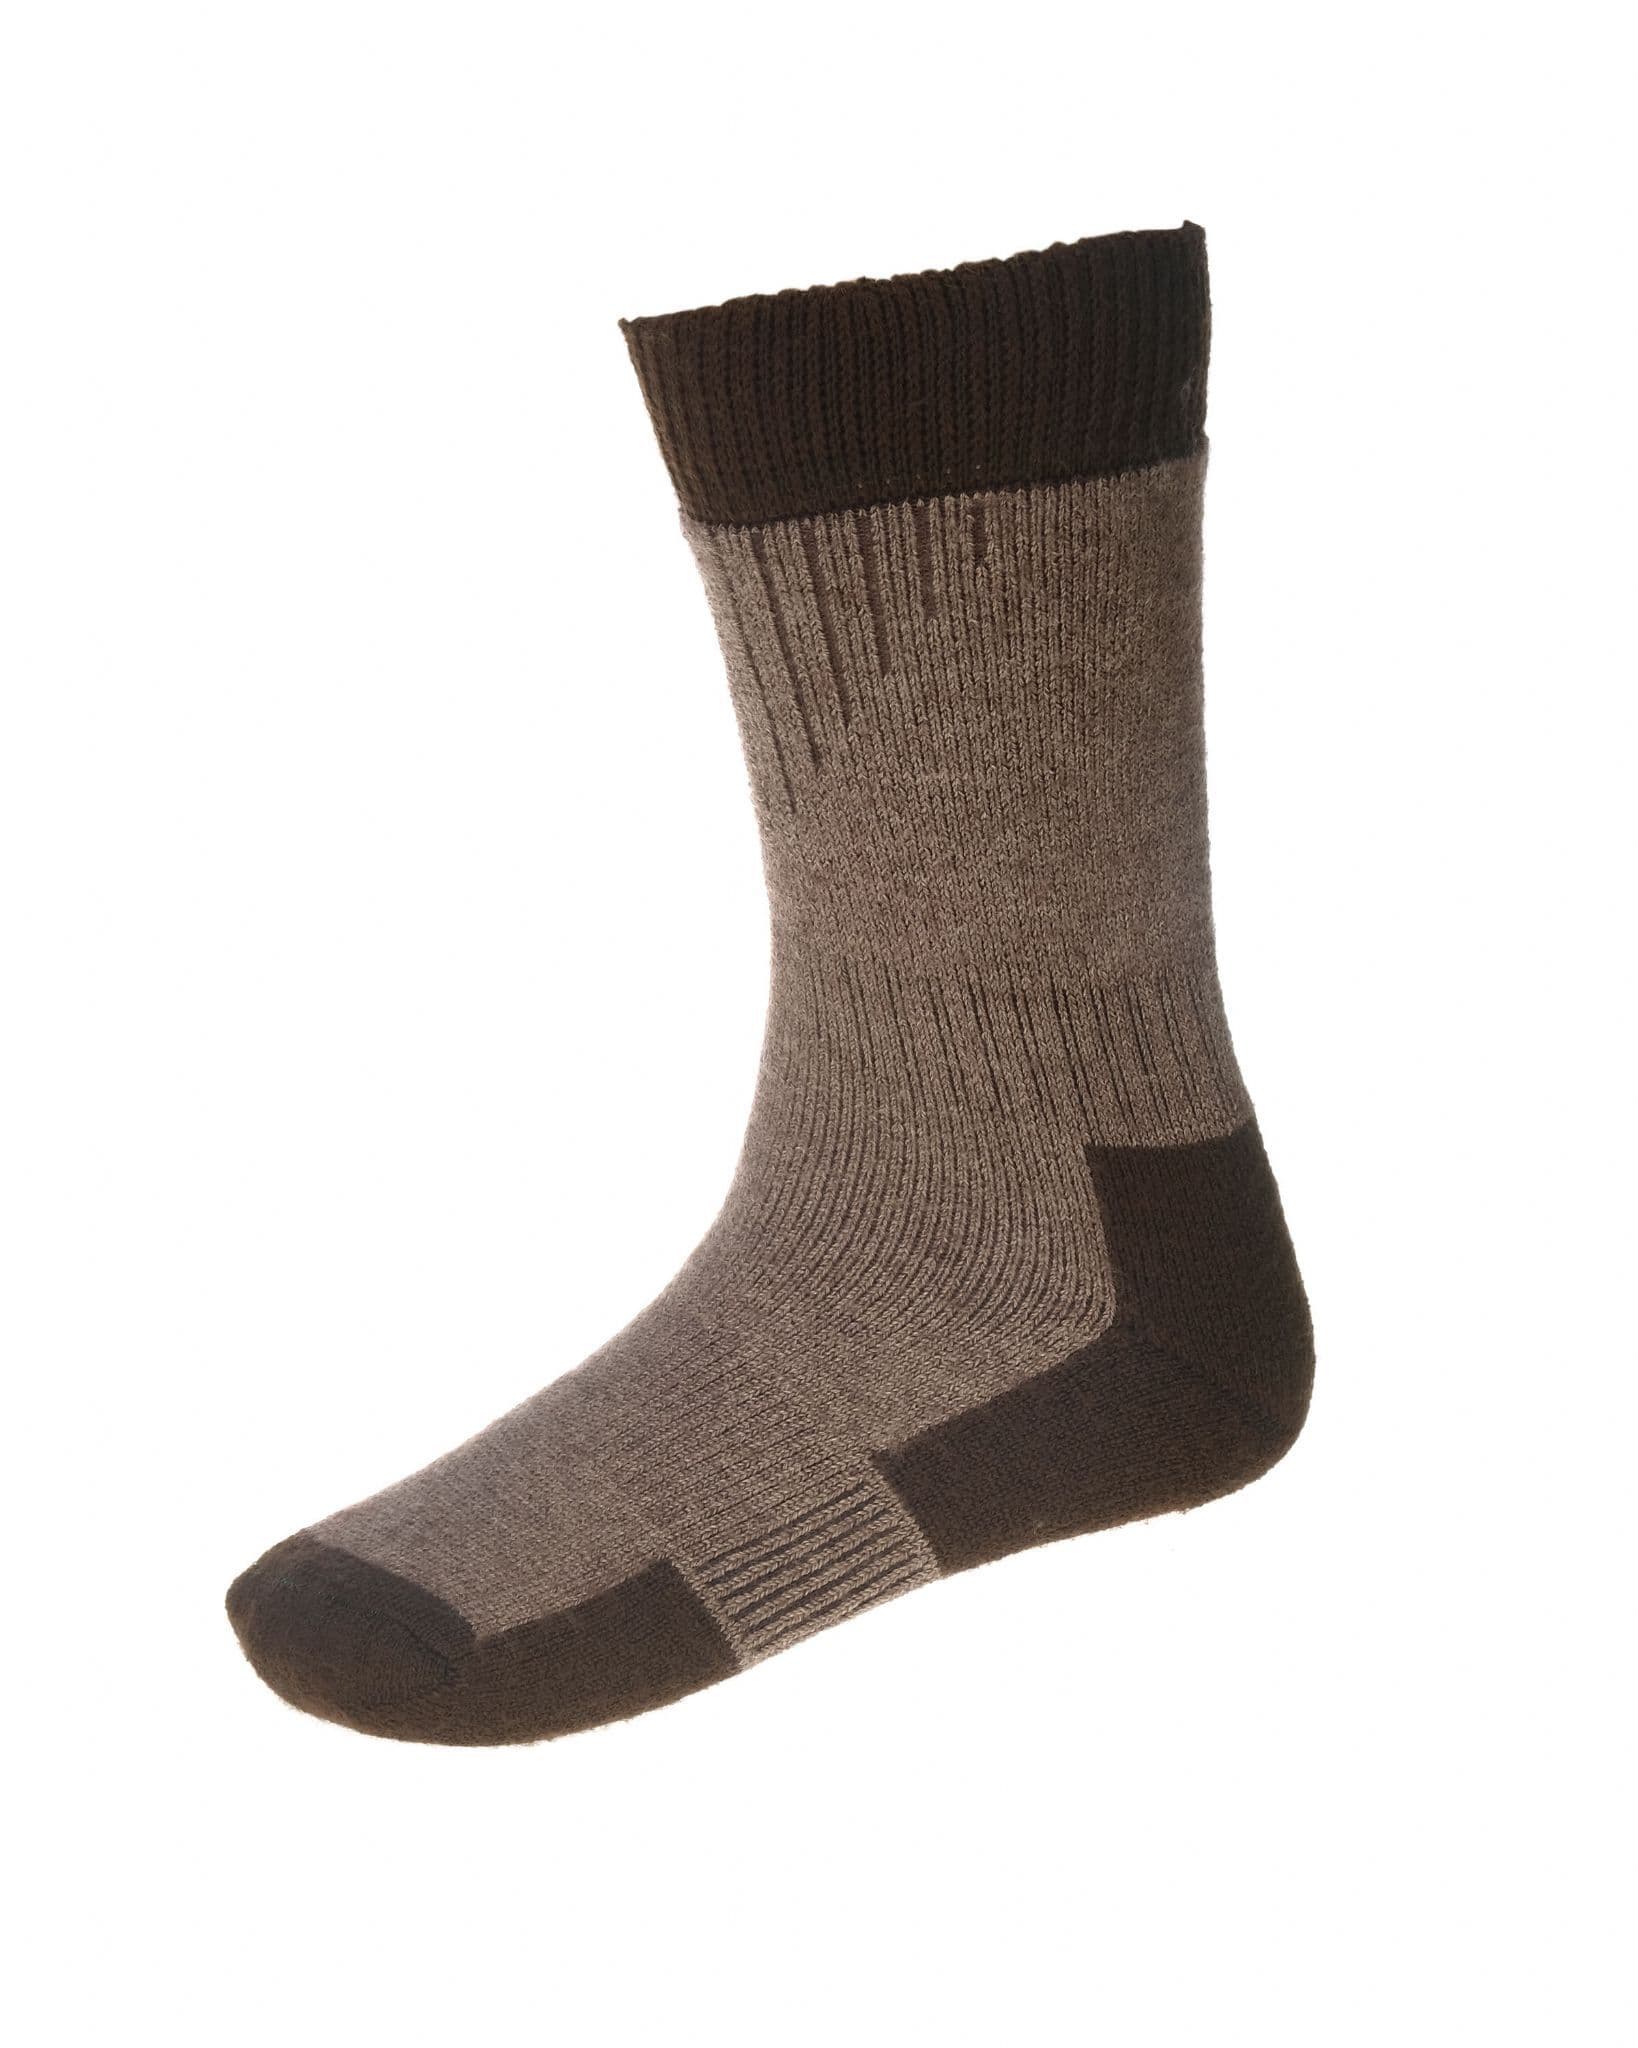 House Of Cheviot Men's Glen Short Technical Socks - Bison/Dark Natural